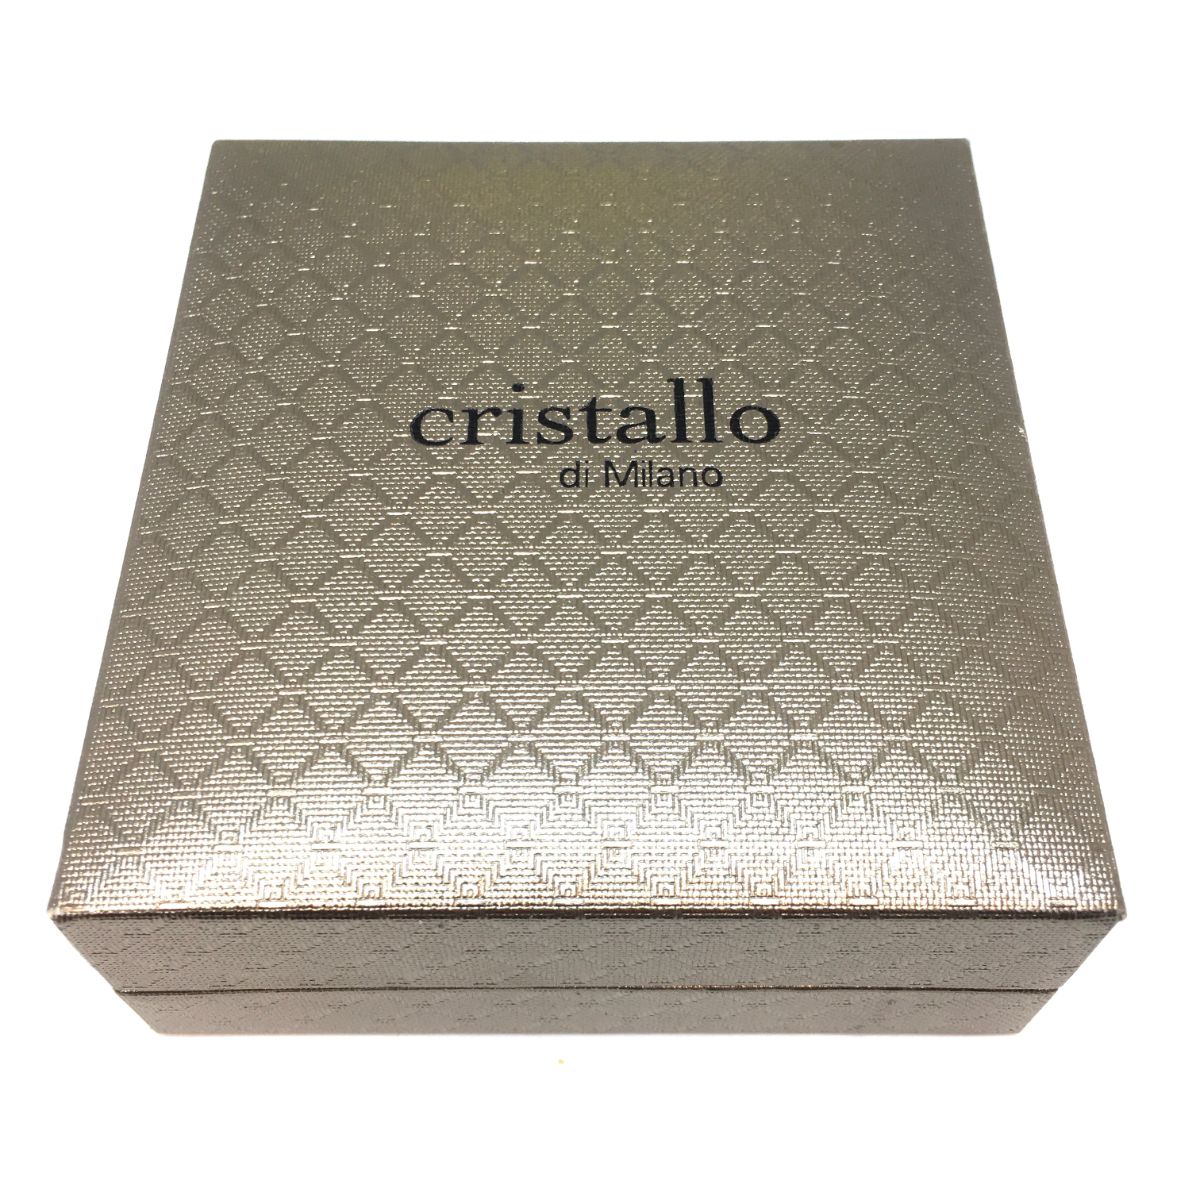 Cristallo di Milano Gift Box Image